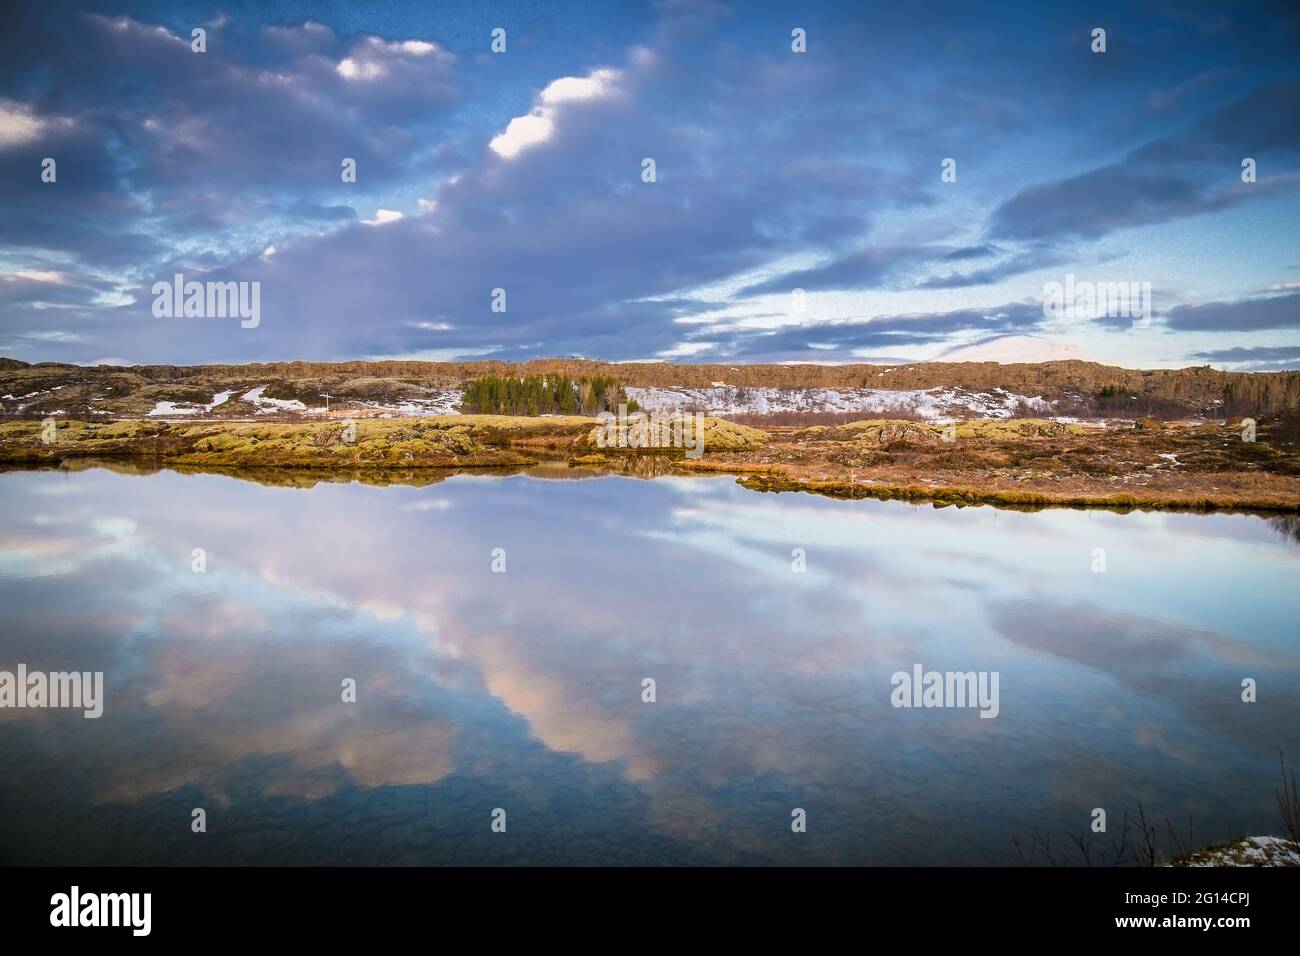 Magnifique paysage islandais d'hiver avec des montagnes couvertes de neige et ciel bleu nuageux. Islande. Banque D'Images